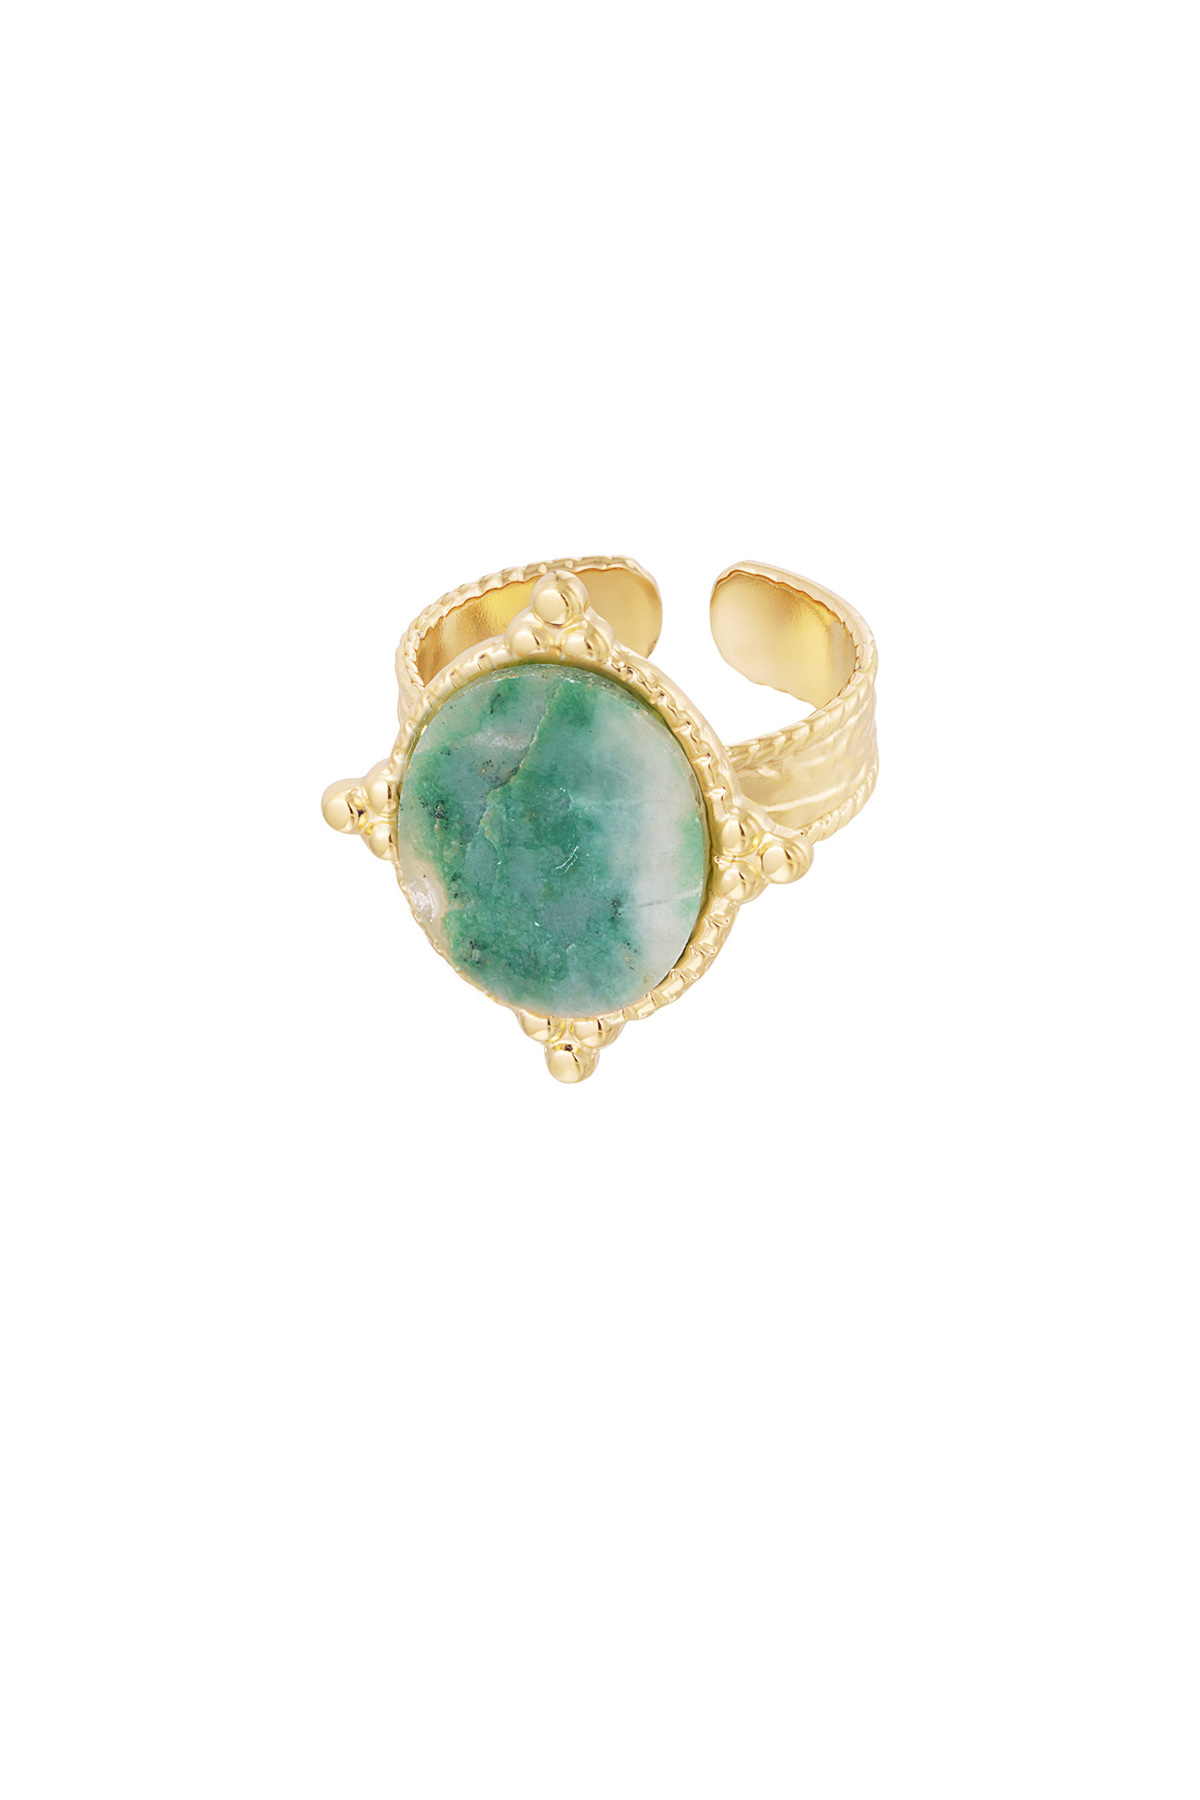 Ring steen met versiersel - goud/groen